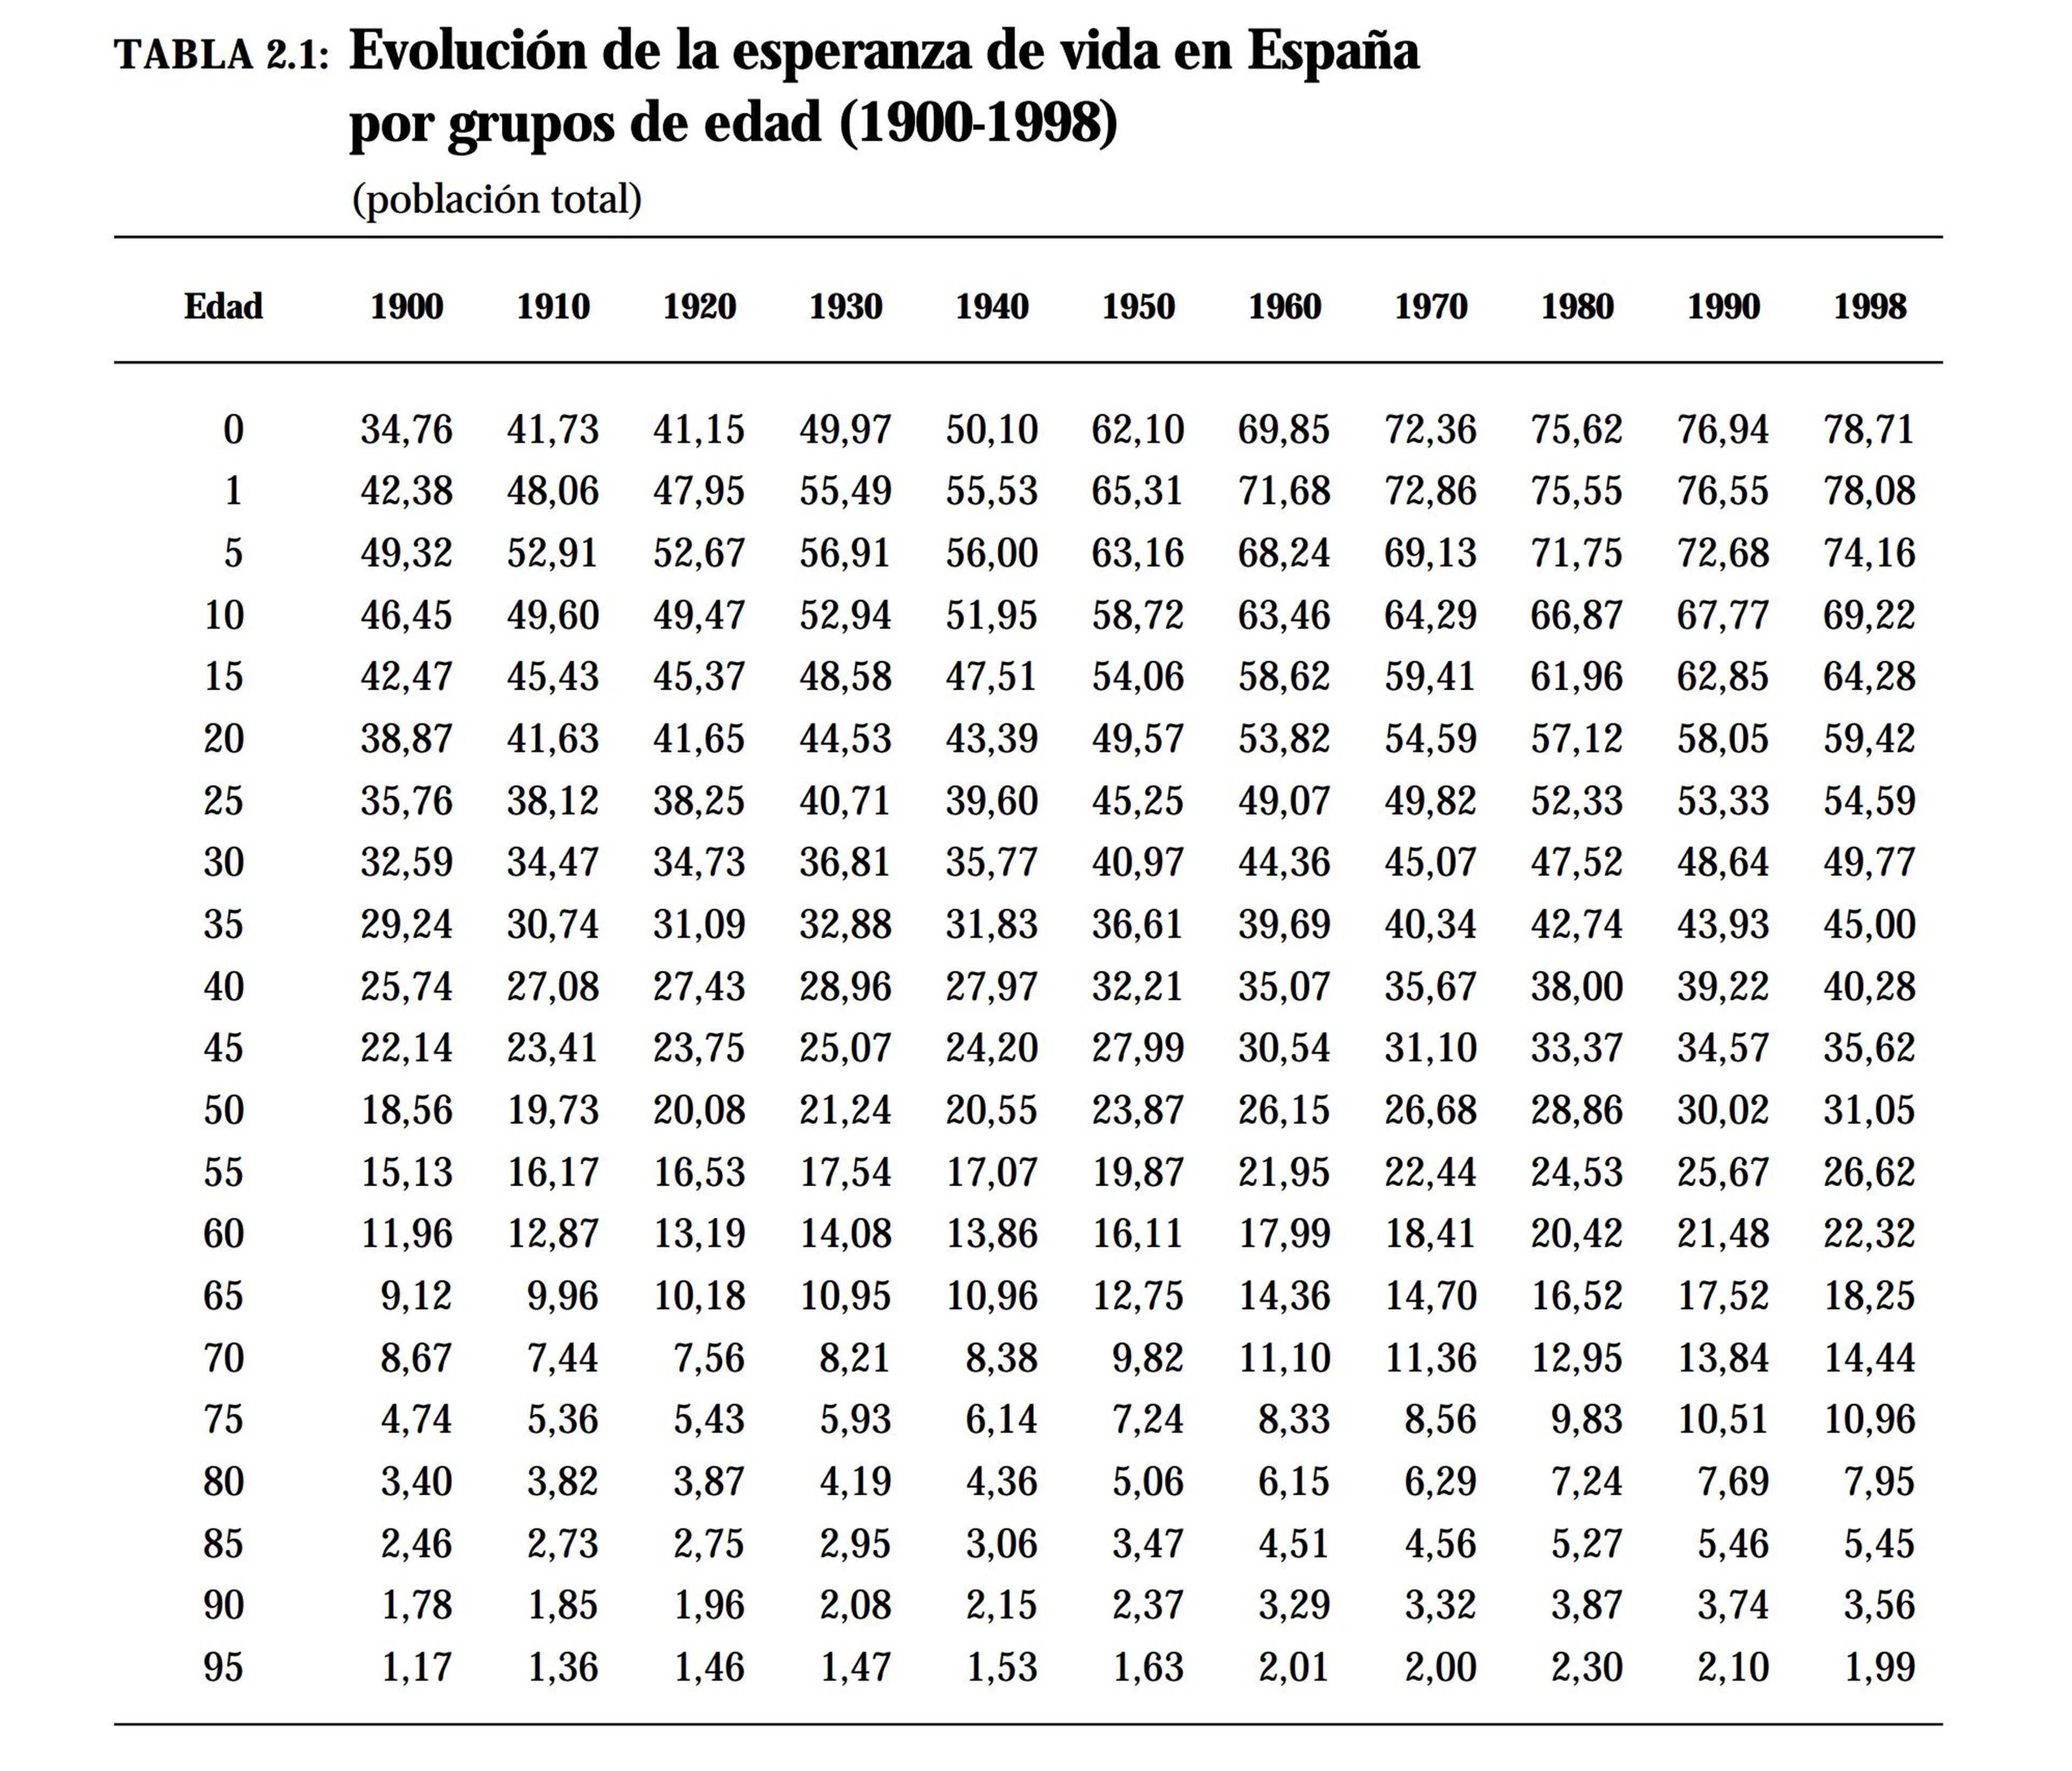 Esperanza de vida en España a lo largo del siglo XX, por grupos de edad.